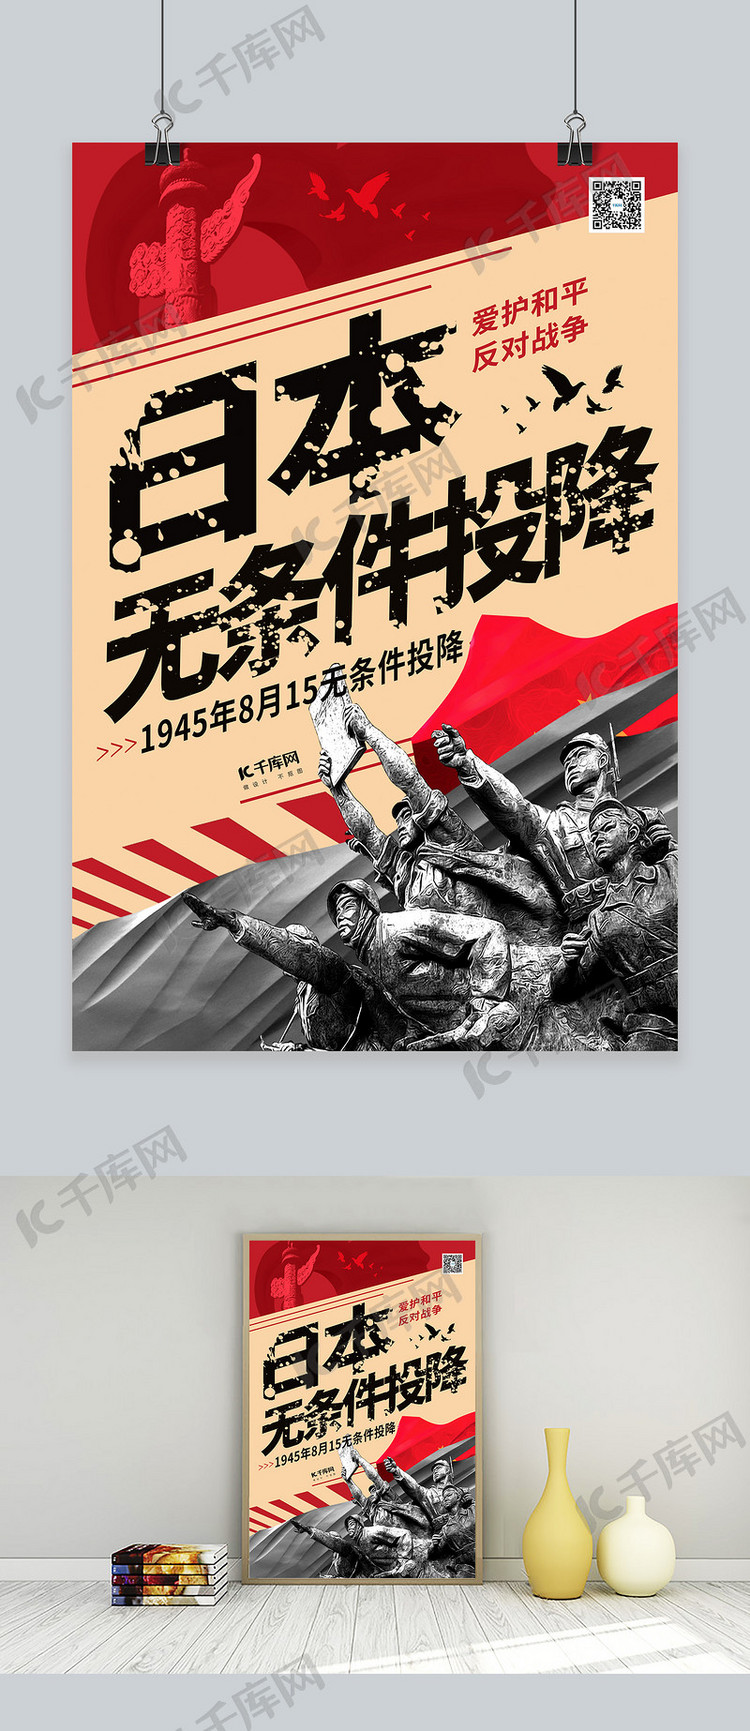 抗战胜利日本无条件投降暖色系简约海报